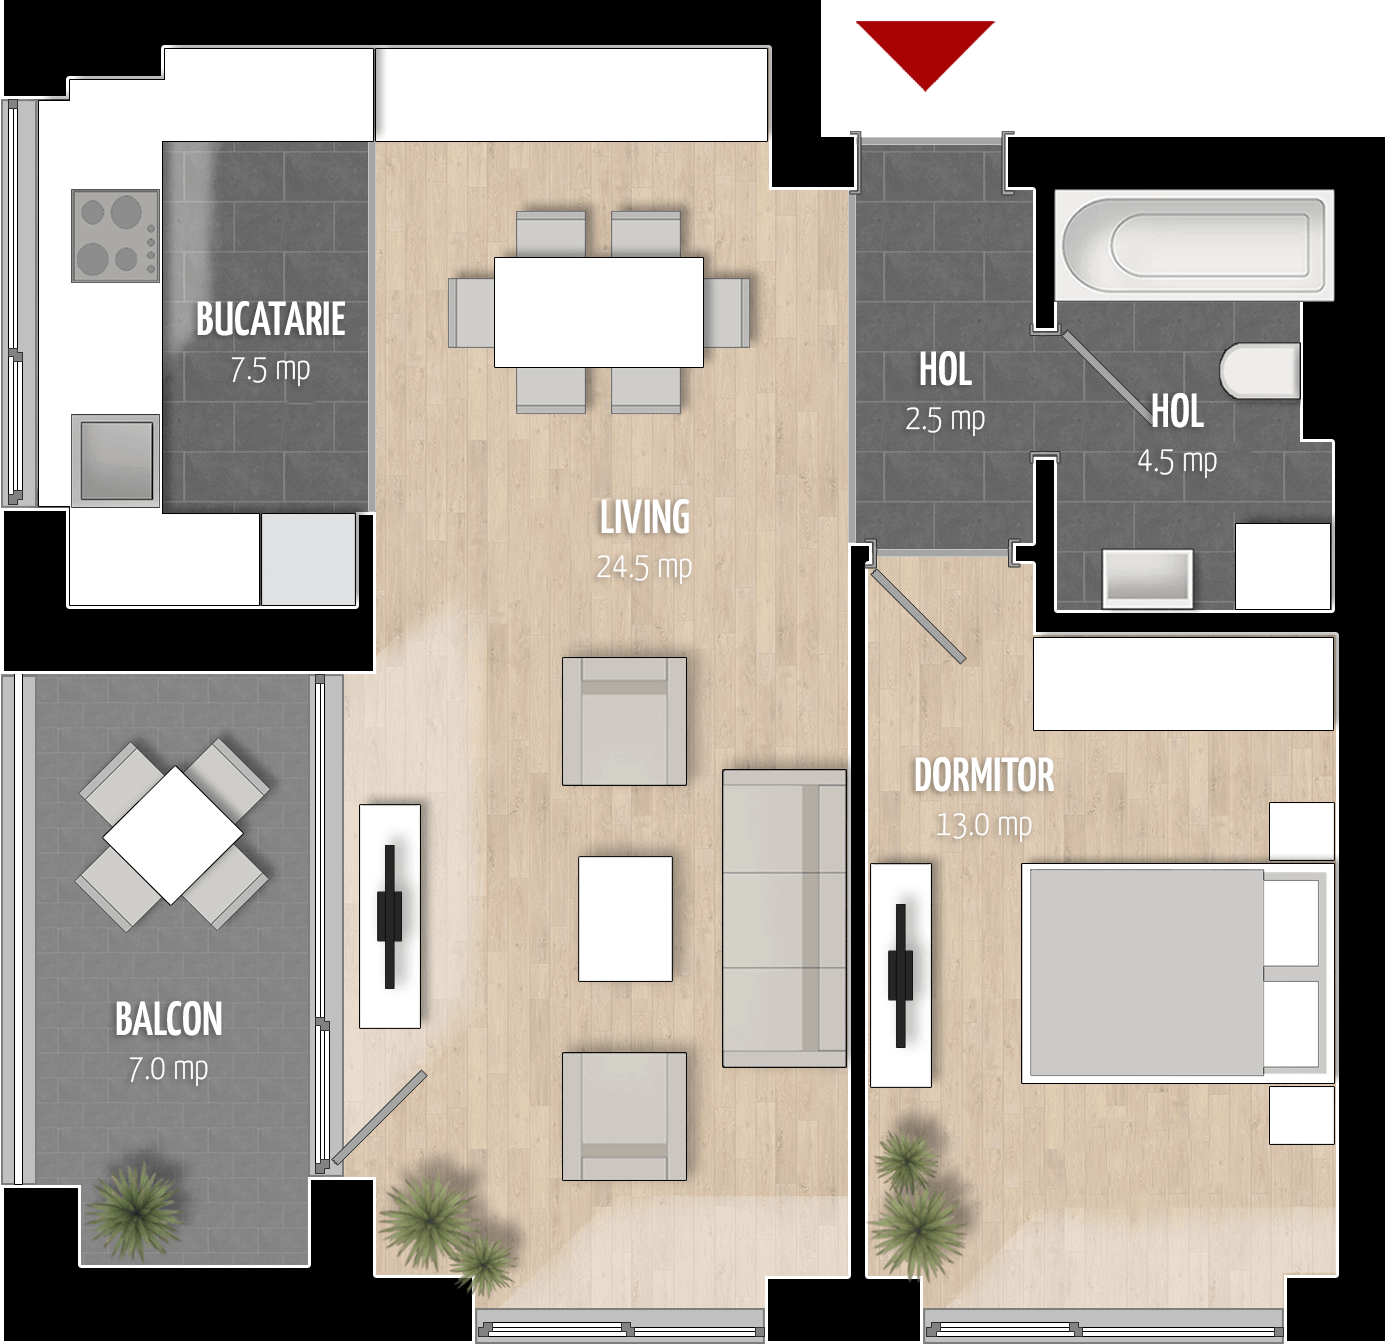  Apartament 103, Tip de apartament 2B cu 2 camere 